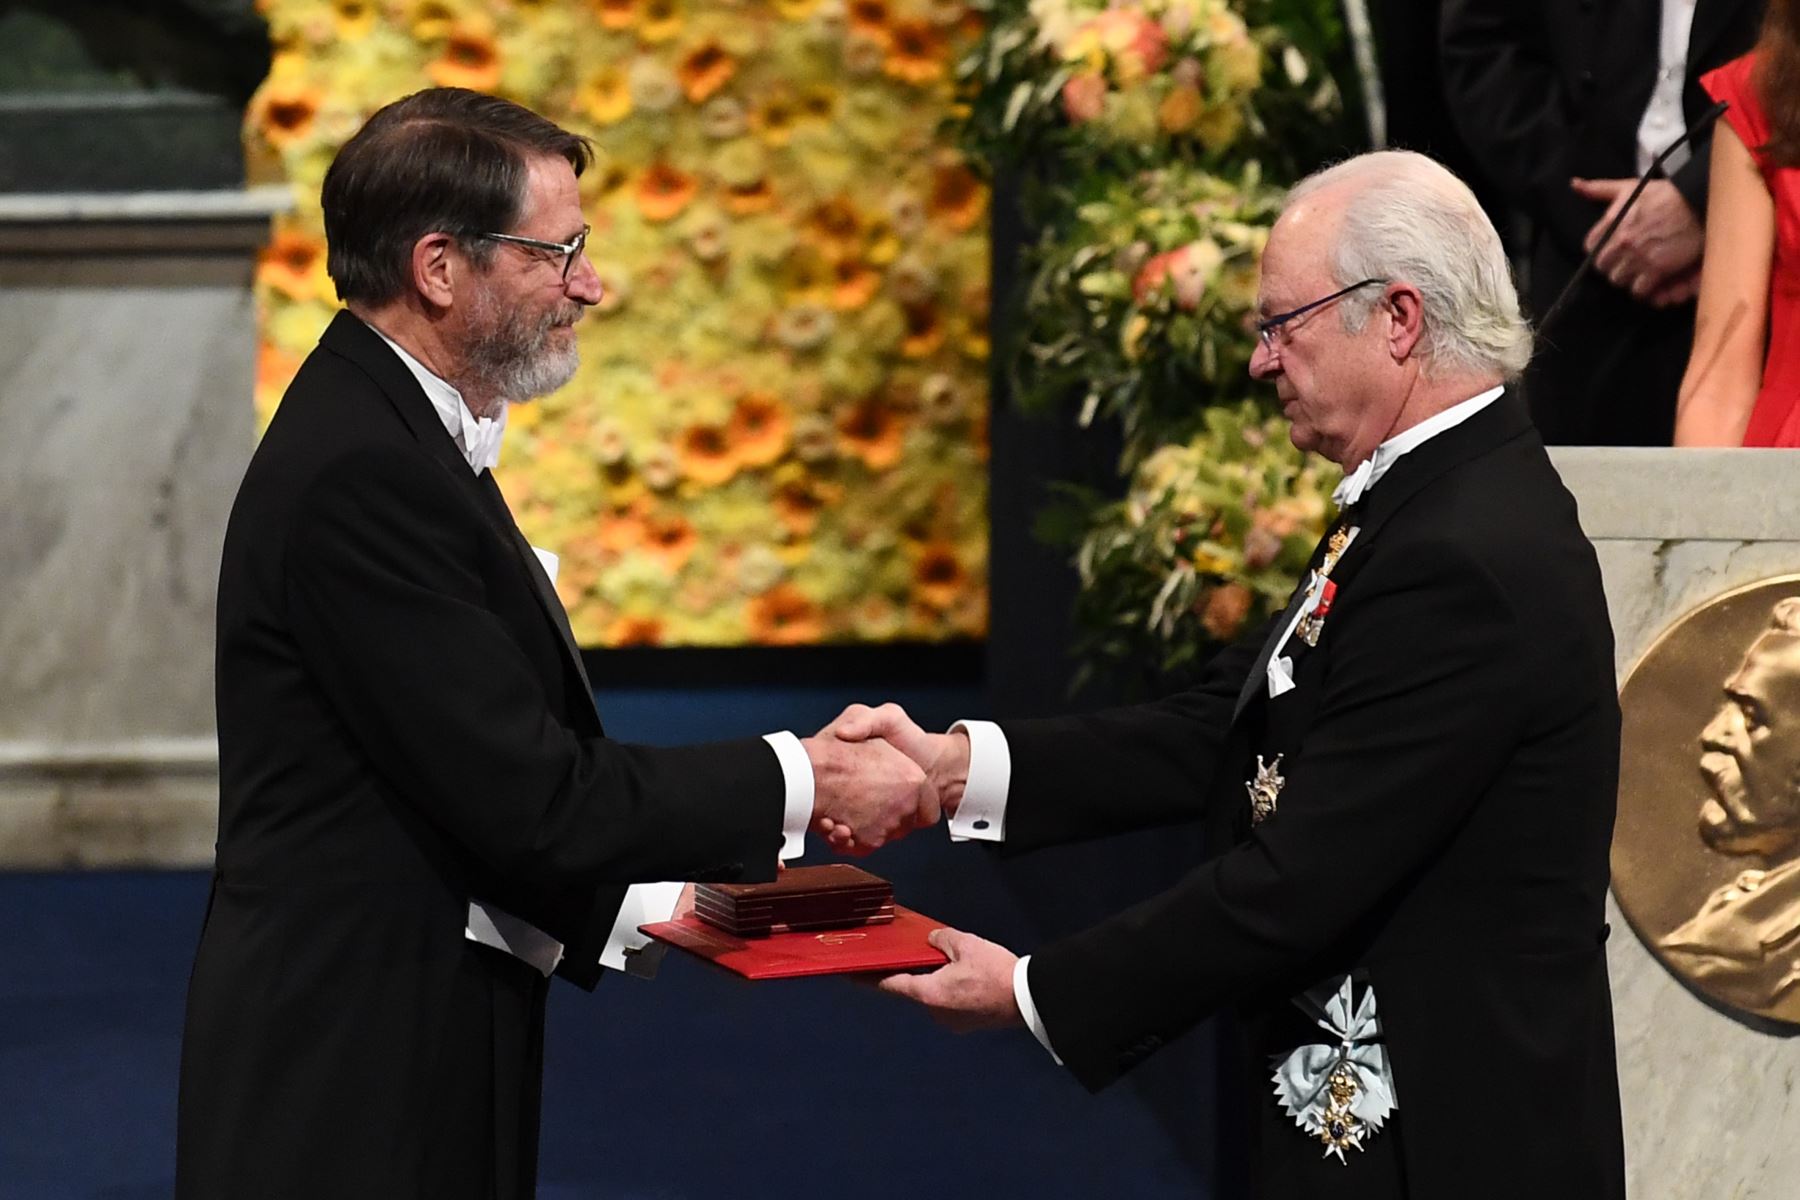 Biólogo y co-laureado estadounidense del Premio Nobel de Química 2018 George Smith recibió su Premio Nobel del Rey Carl XVI Gustaf de Suecia (R) durante la ceremonia de entrega de premios 2018 el 10 de diciembre de 2018 en la Sala de Conciertos de Estocolmo, Suecia. AFP